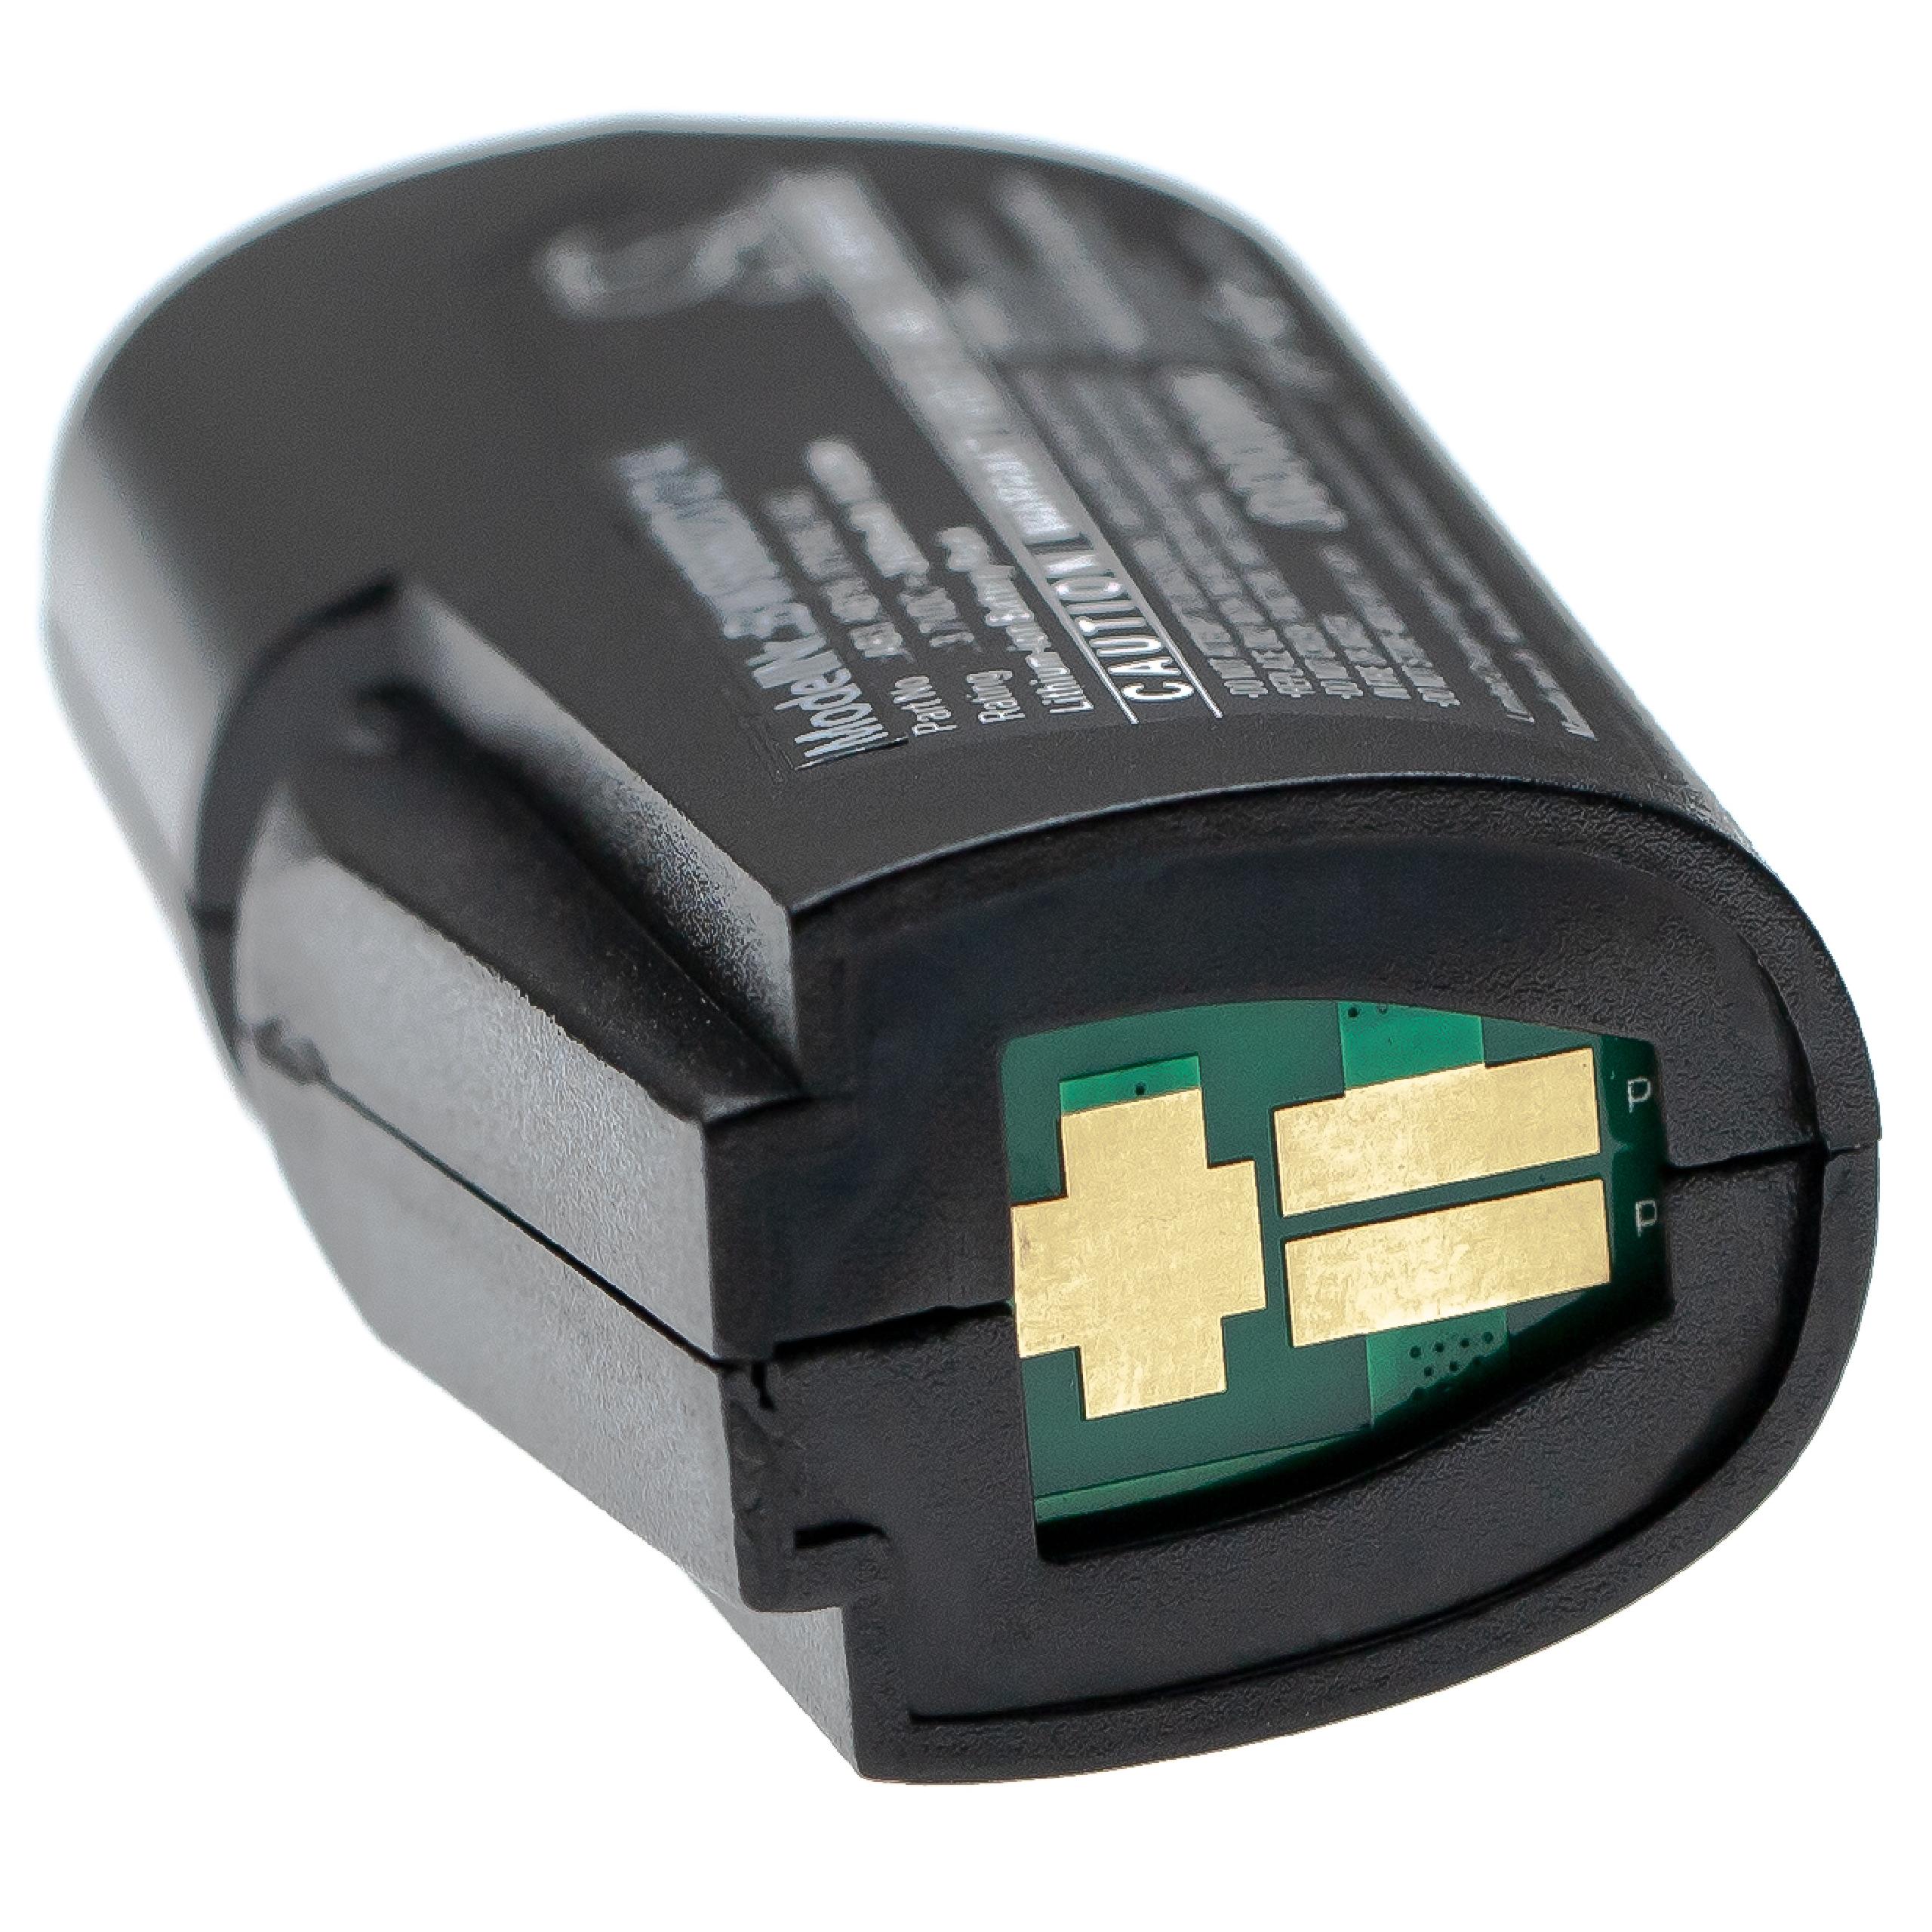 Batterie remplace Intermec AB19, 075082-002, AB3 pour scanner de code-barre - 2600mAh 3,7V Li-ion